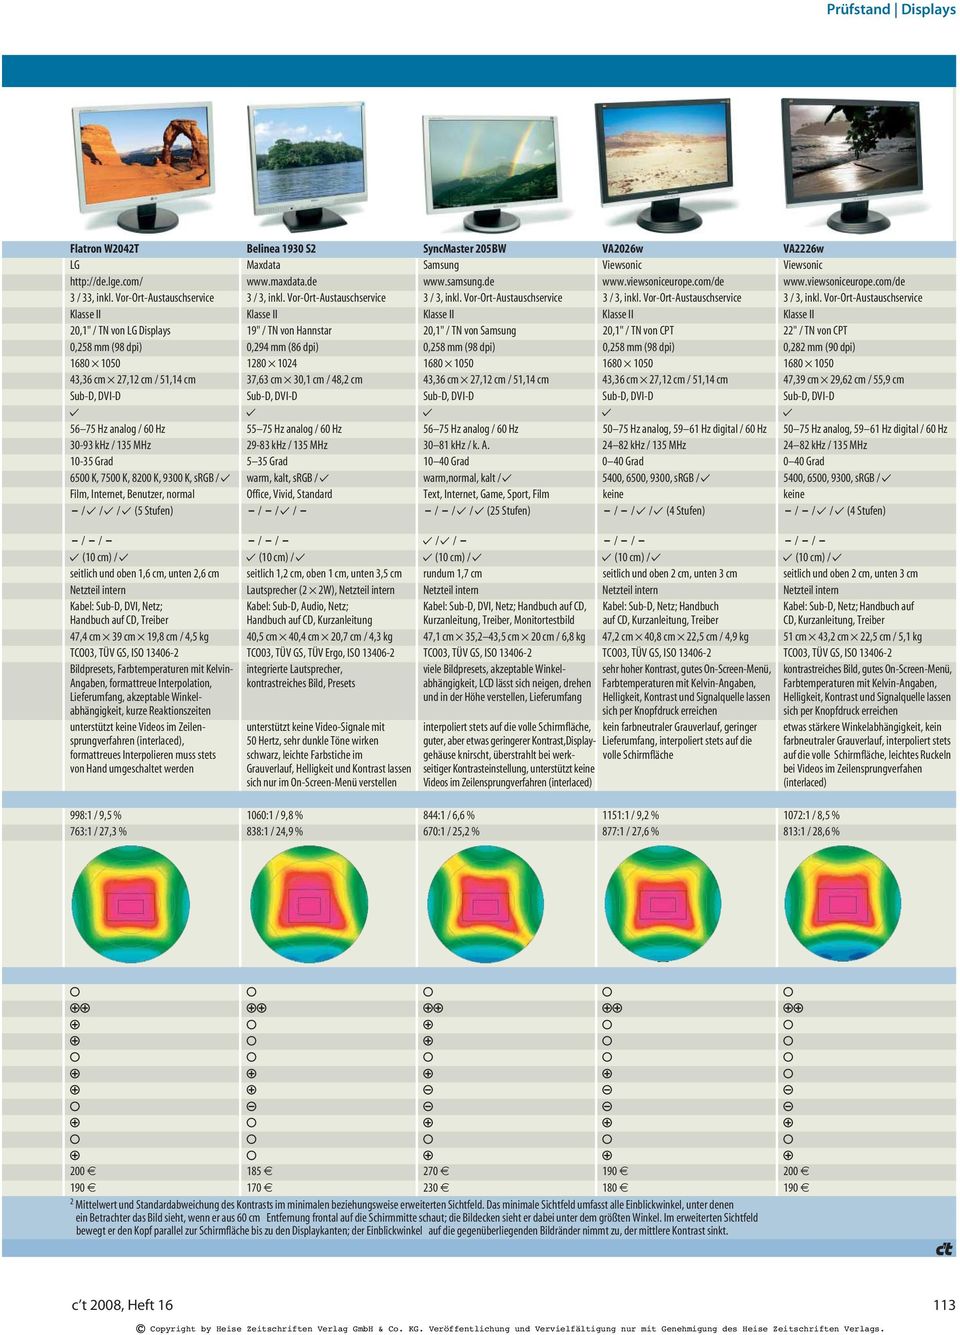 Vor-Ort-Austauschservice Klasse II Klasse II Klasse II Klasse II Klasse II 20,1" / TN von LG Displays 19" / TN von Hannstar 20,1" / TN von Samsung 20,1" / TN von CPT 22" / TN von CPT 0,258 mm (98